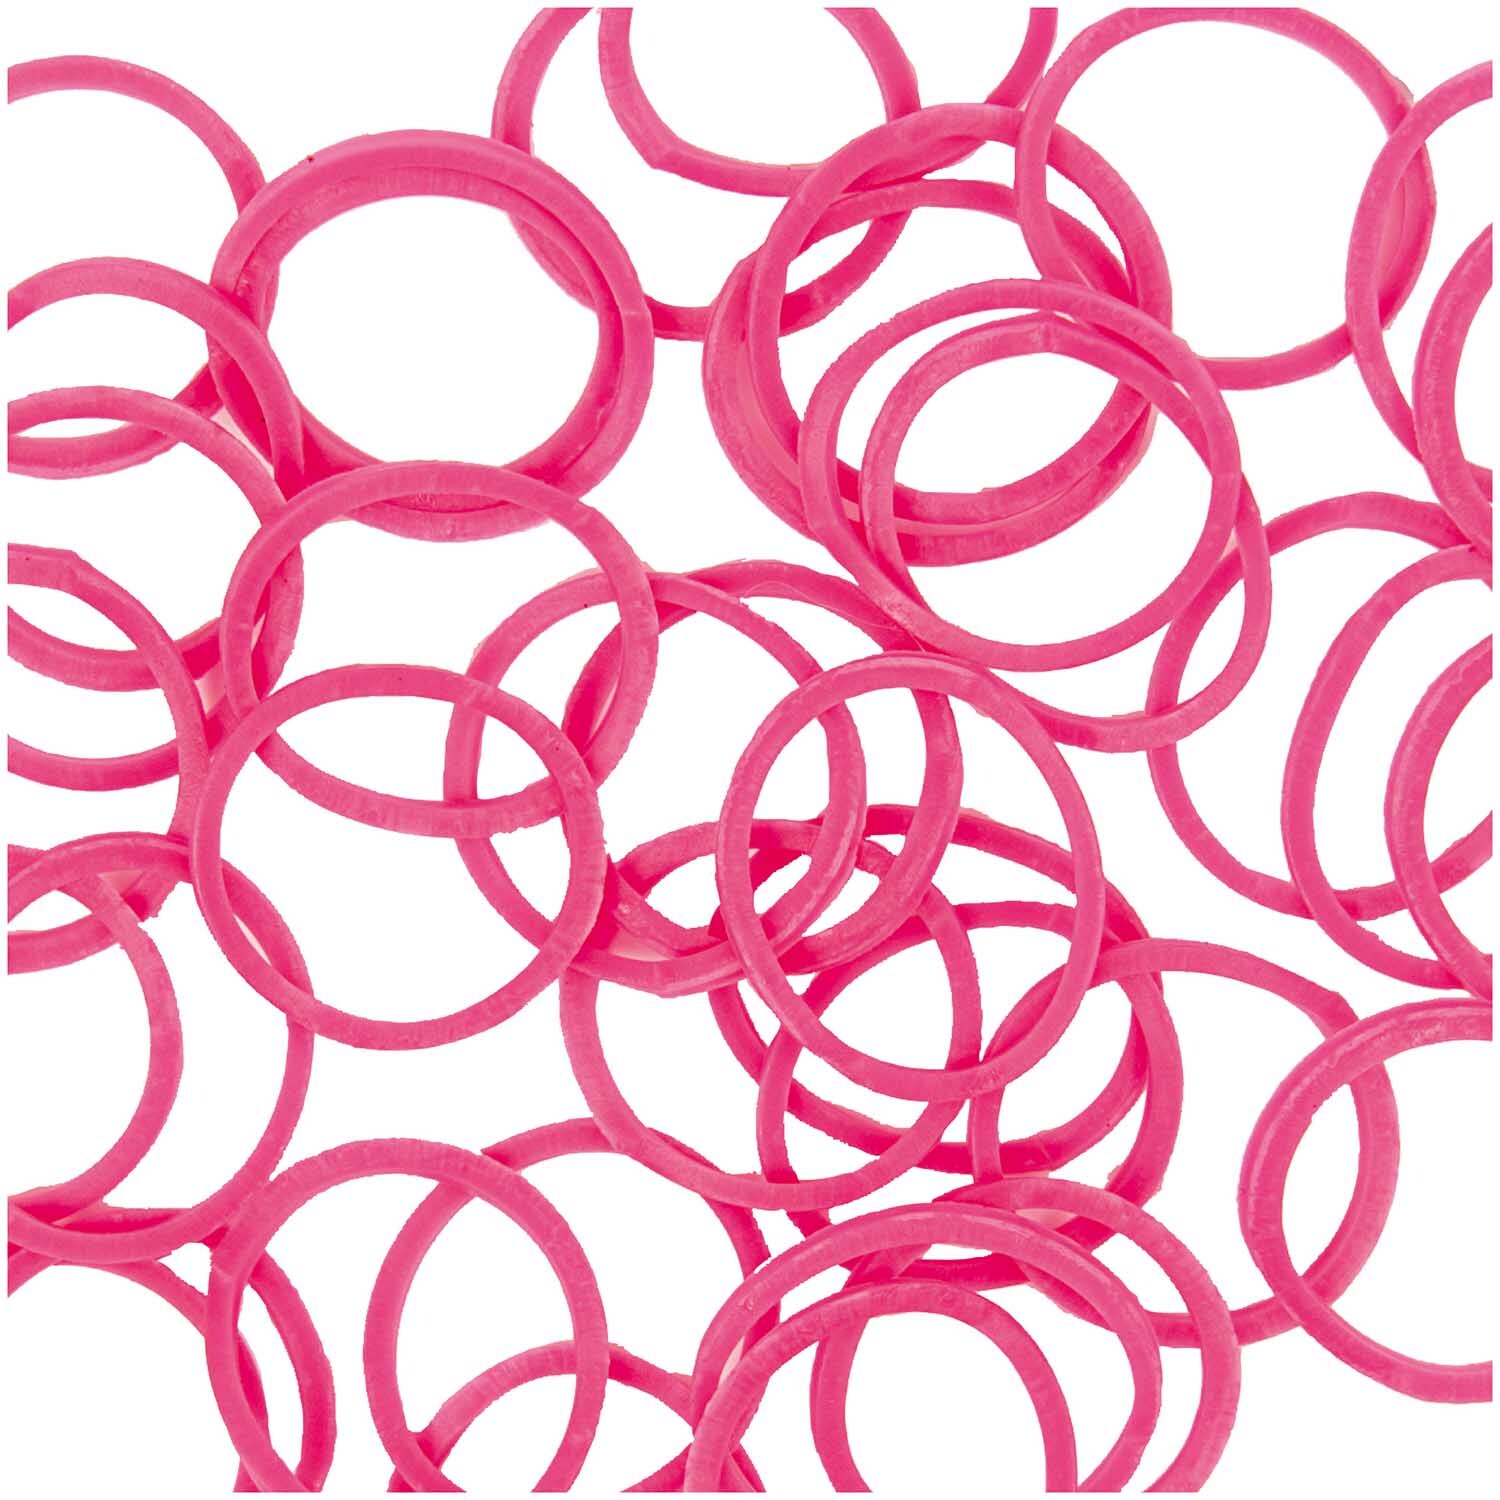 Loom Bänder pink ca. 200 Stück